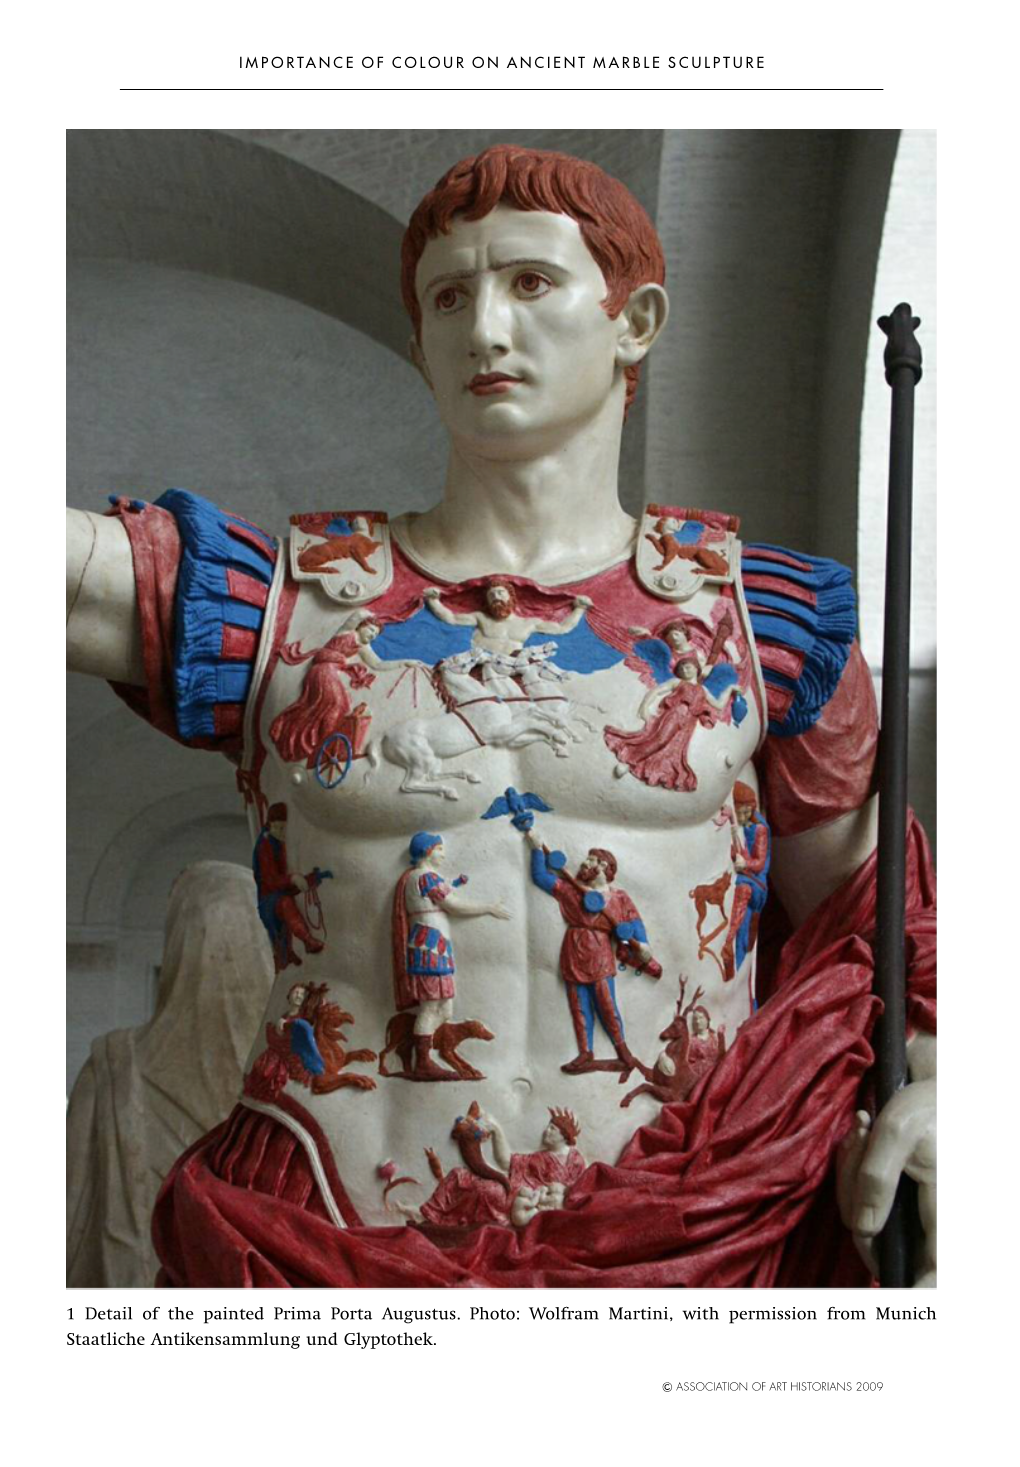 1 Detail of the Painted Prima Porta Augustus. Photo: Wolfram Martini, with Permission from Munich Staatliche Antikensammlung Und Glyptothek